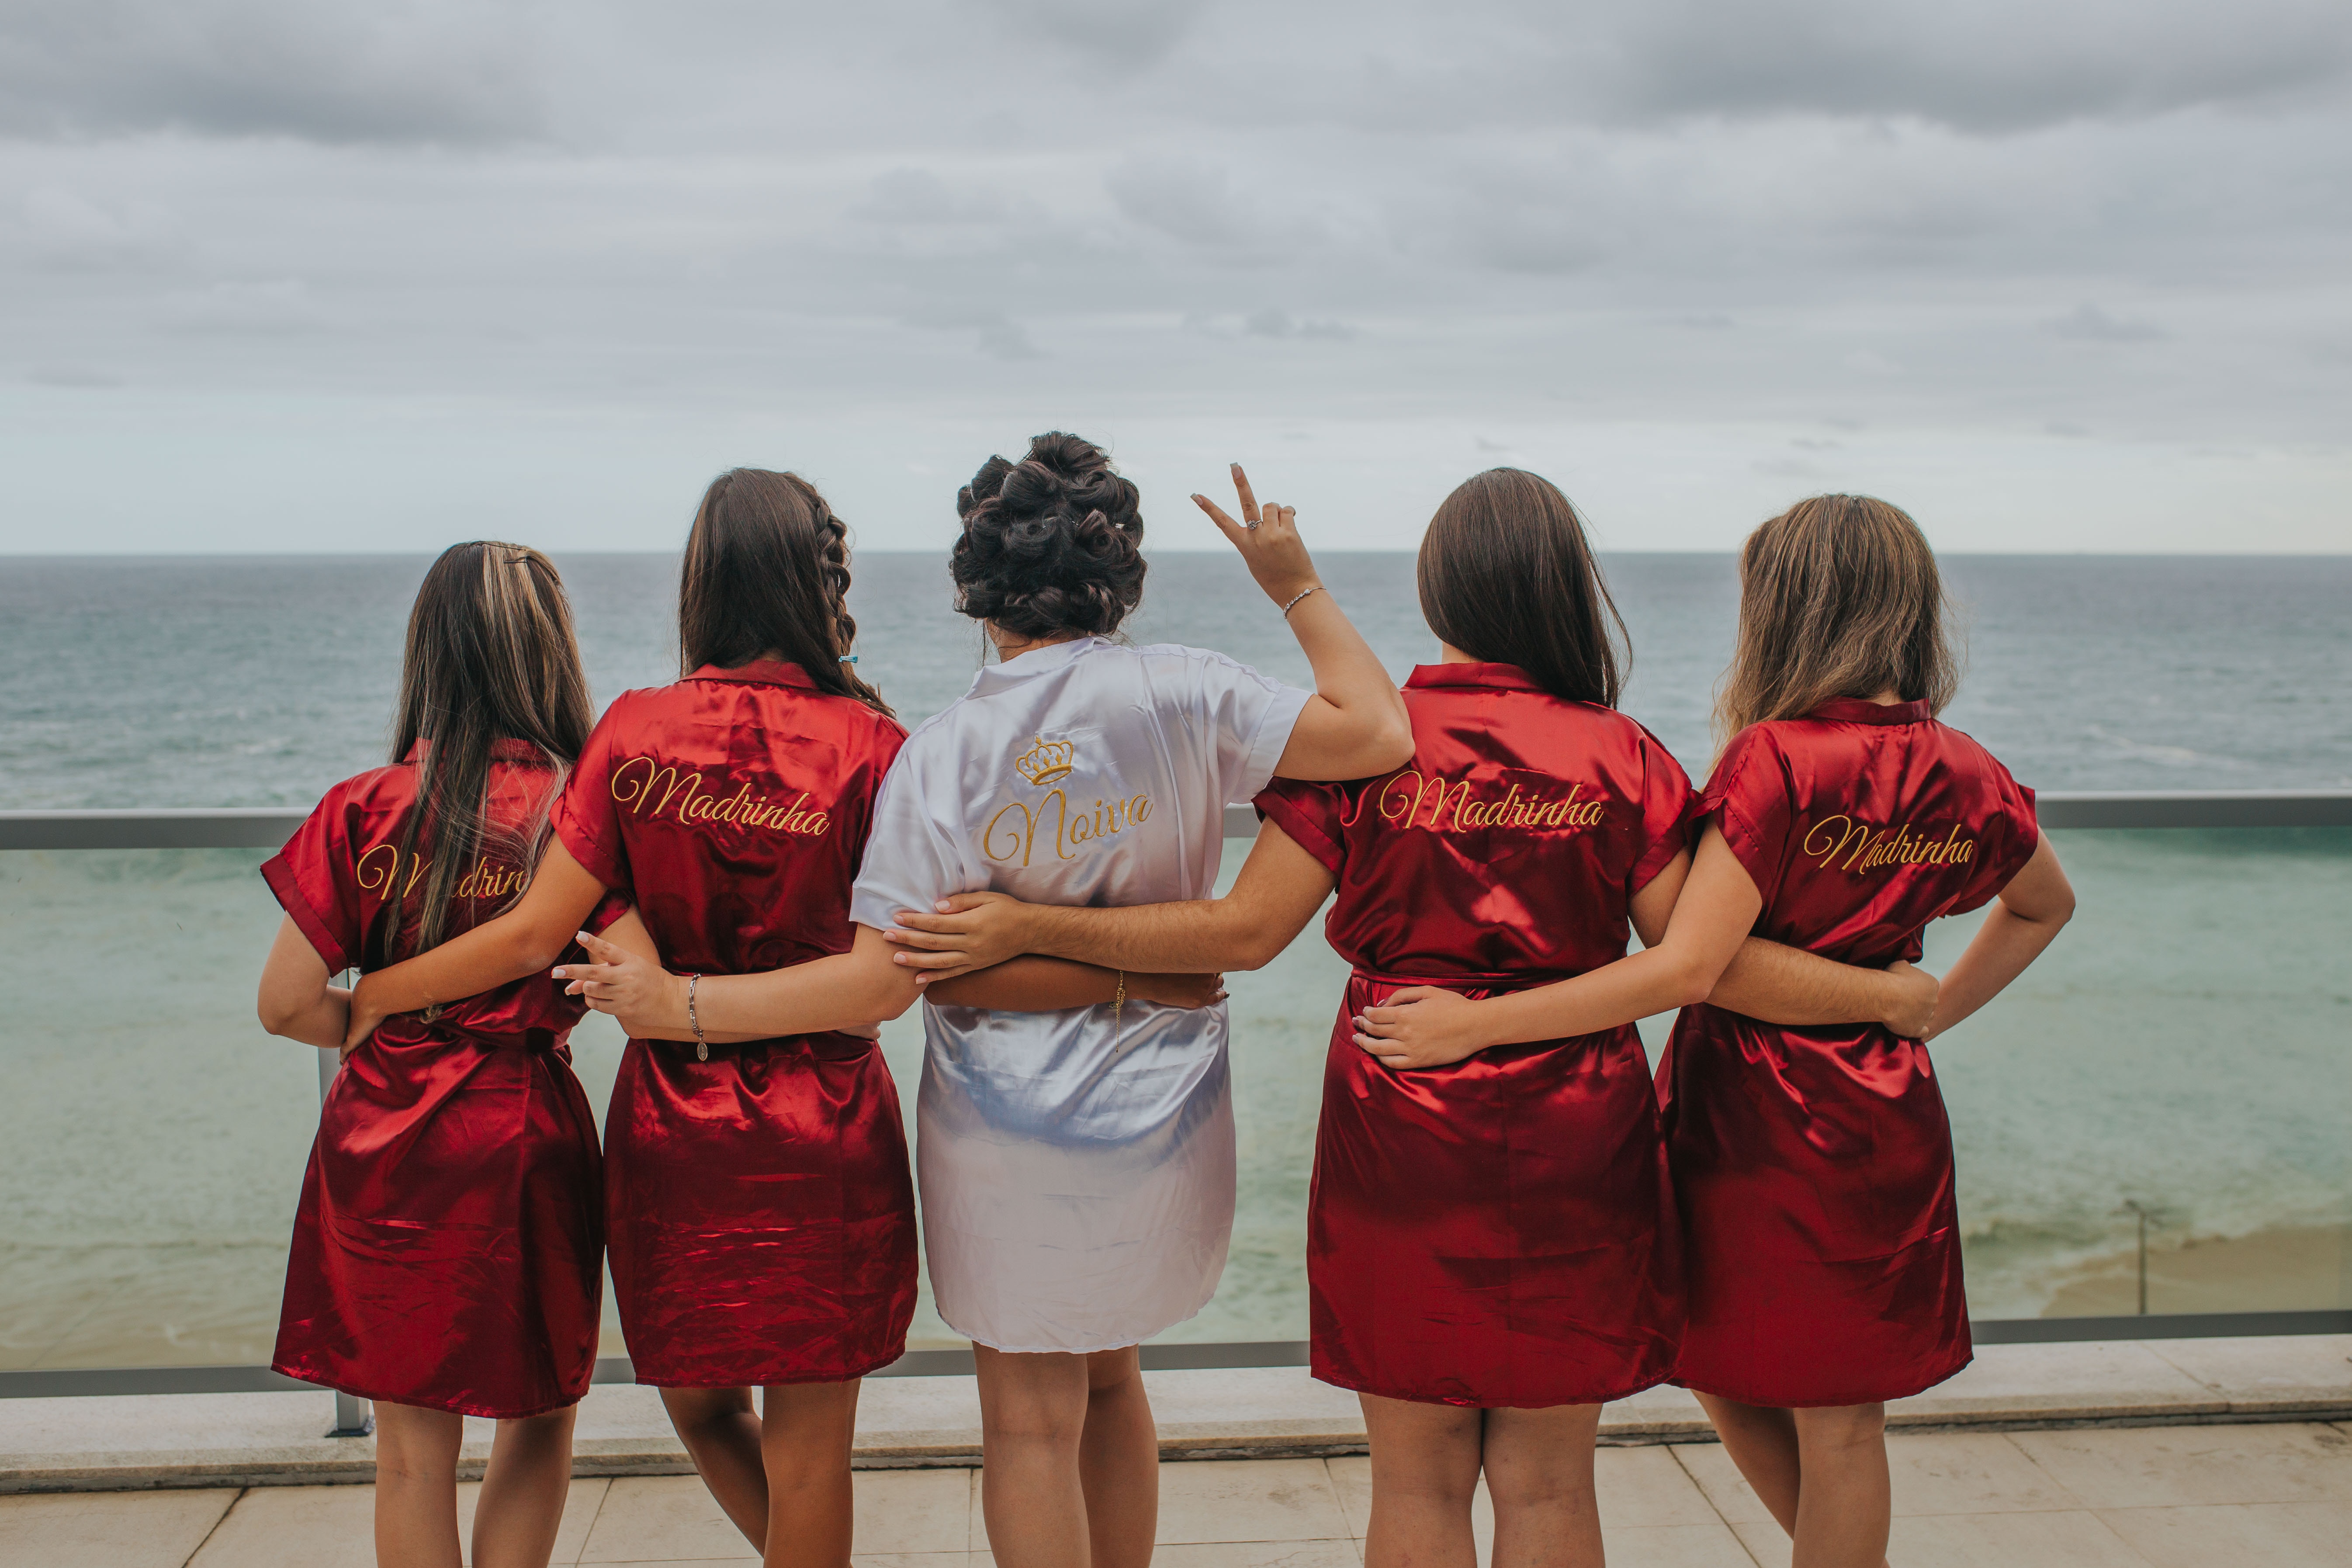 Brautjungfern in roten Gewändern stehen auf einem Balkon mit Blick auf den Ozean.